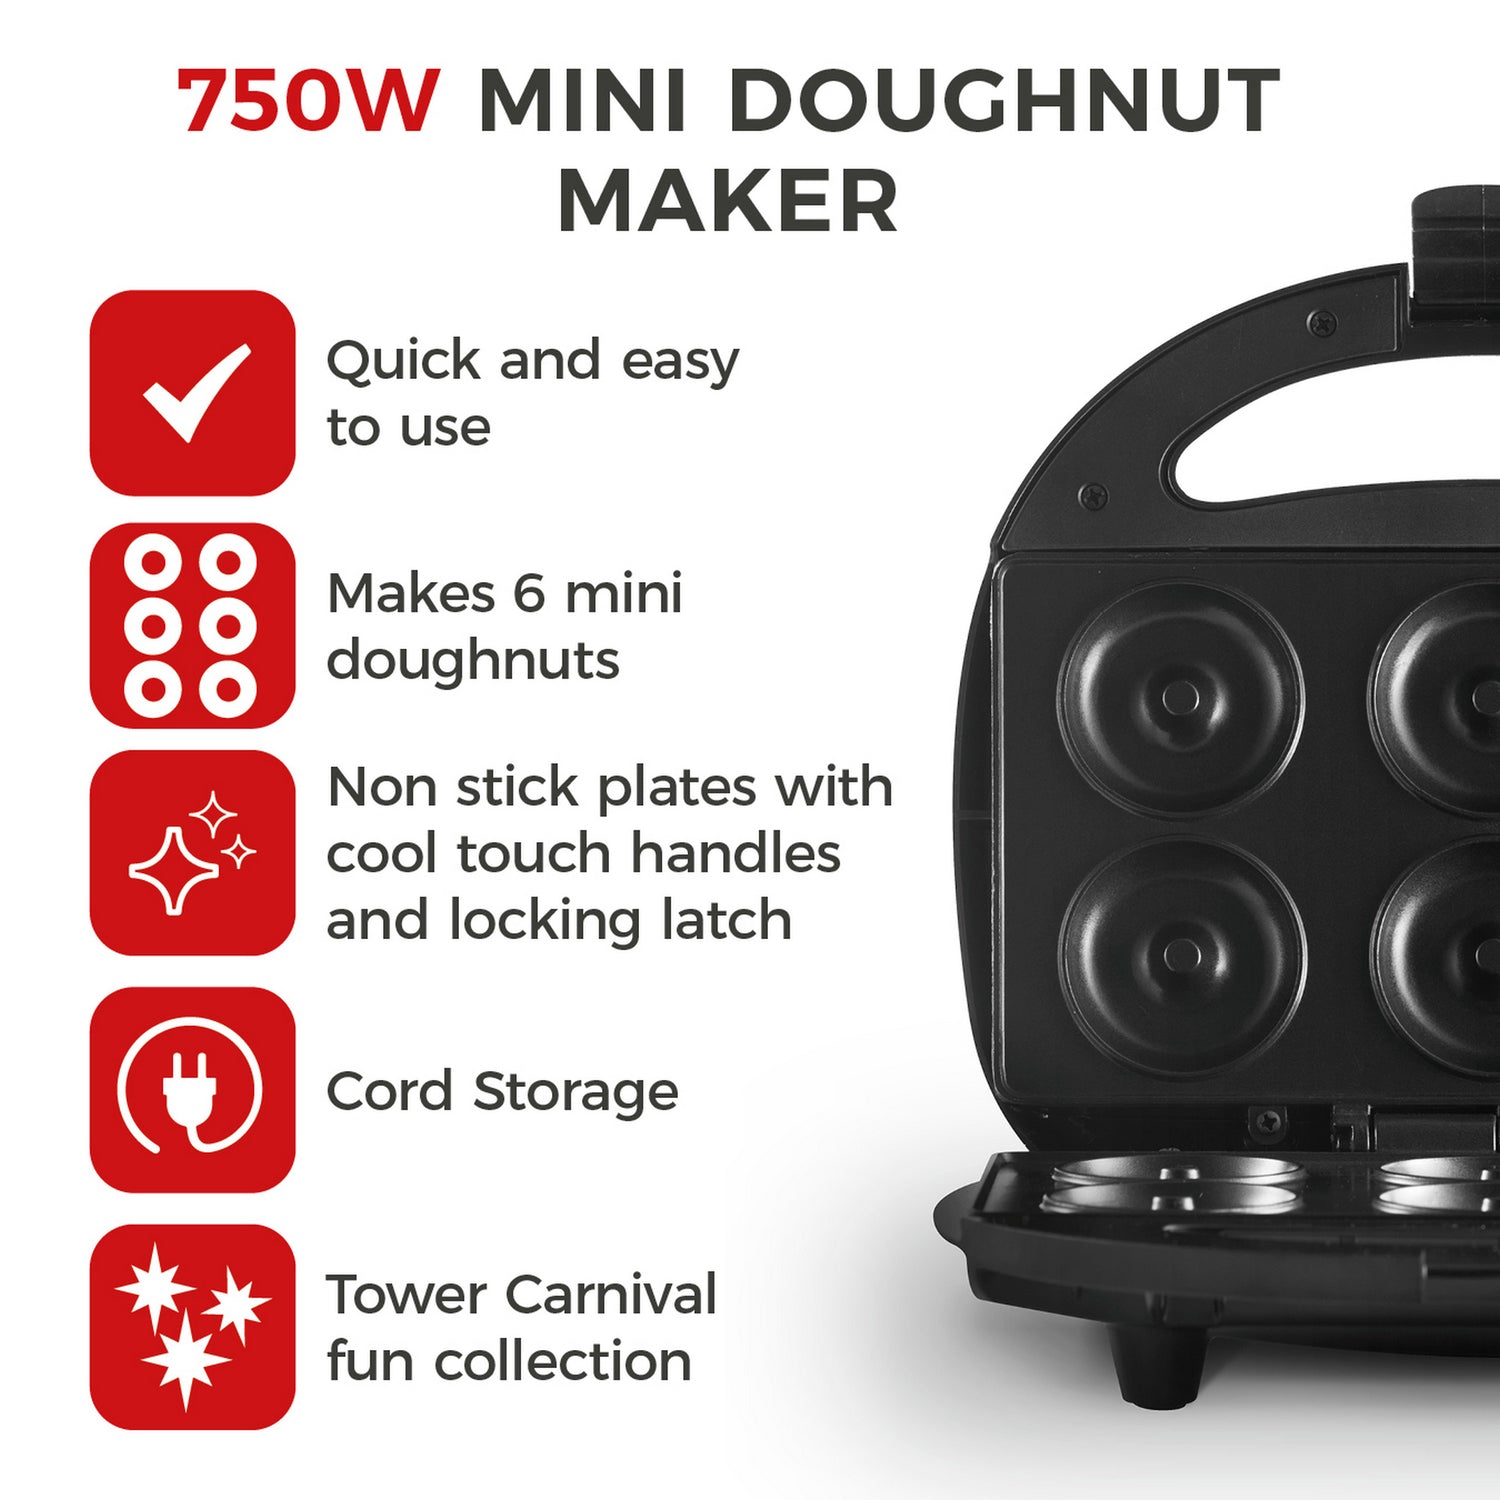 Tower 750W Mini Donut Maker Info 1